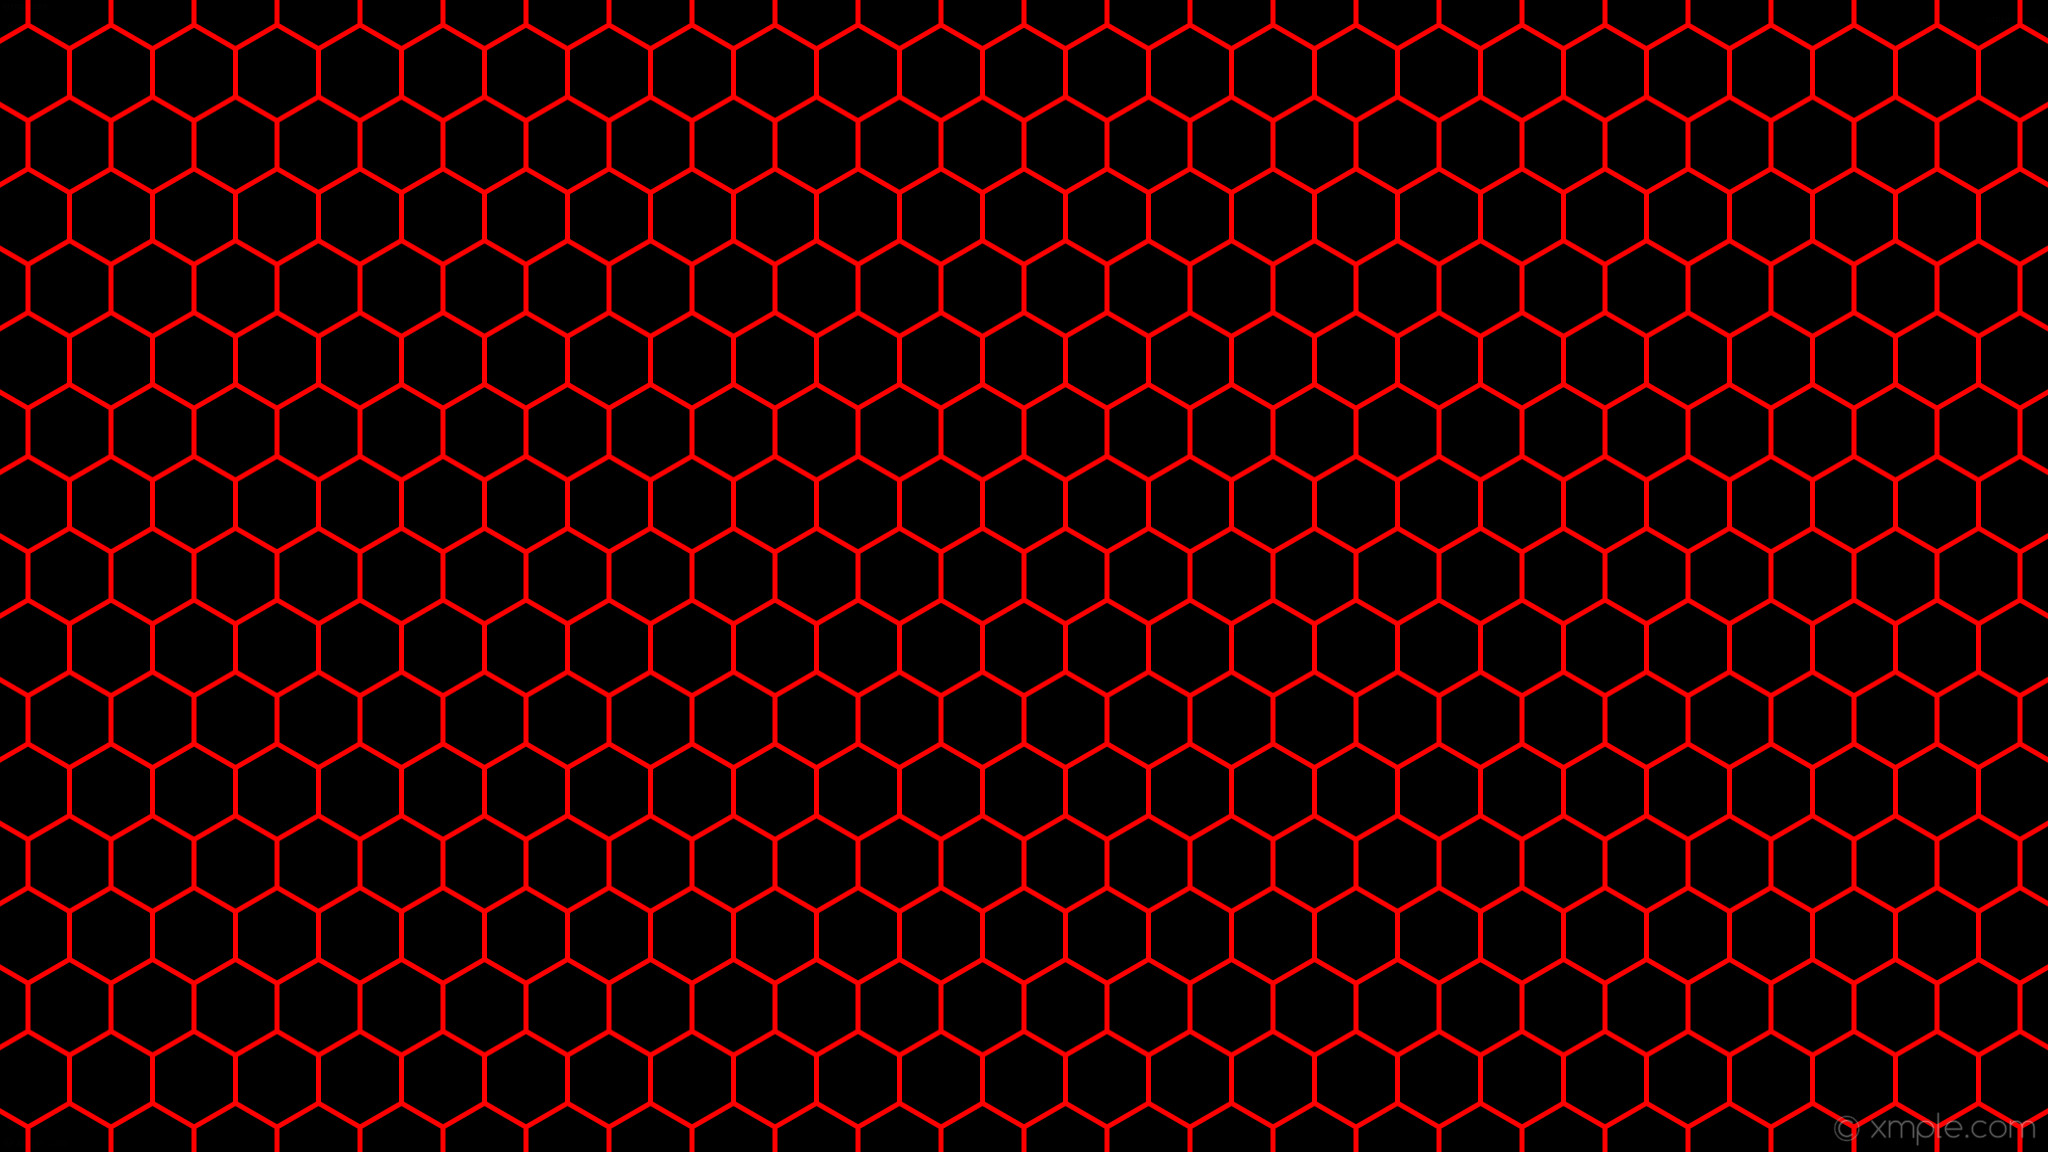 2048x1152 wallpaper beehive red black hexagon honeycomb #000000 #ff0000 0Â° 5px 83px